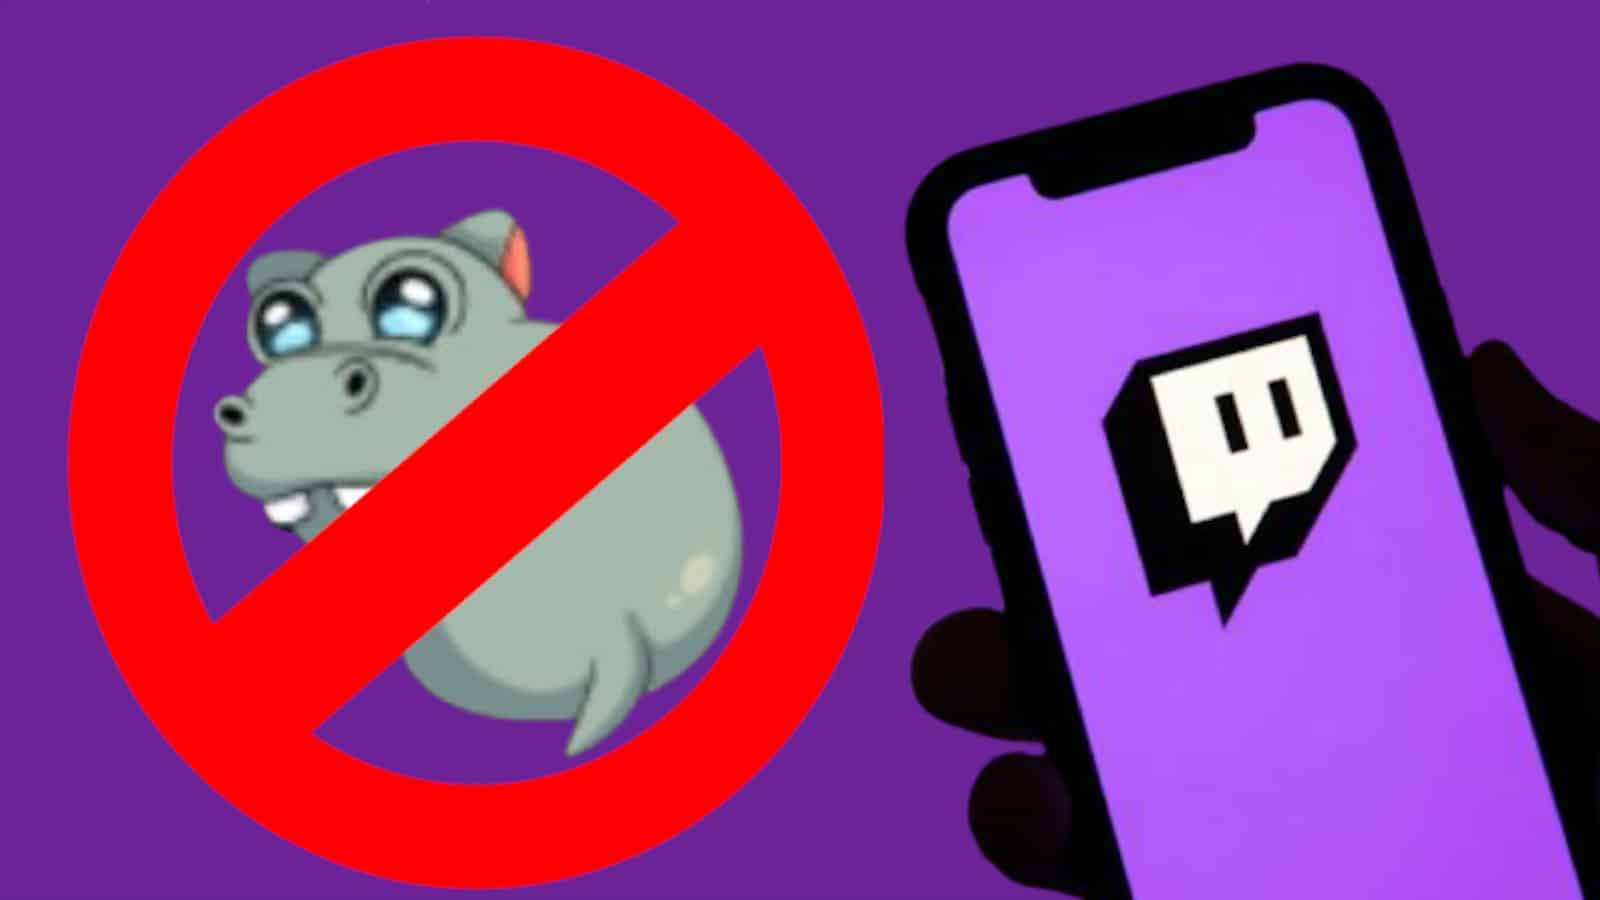 ScummN hippo emote banned